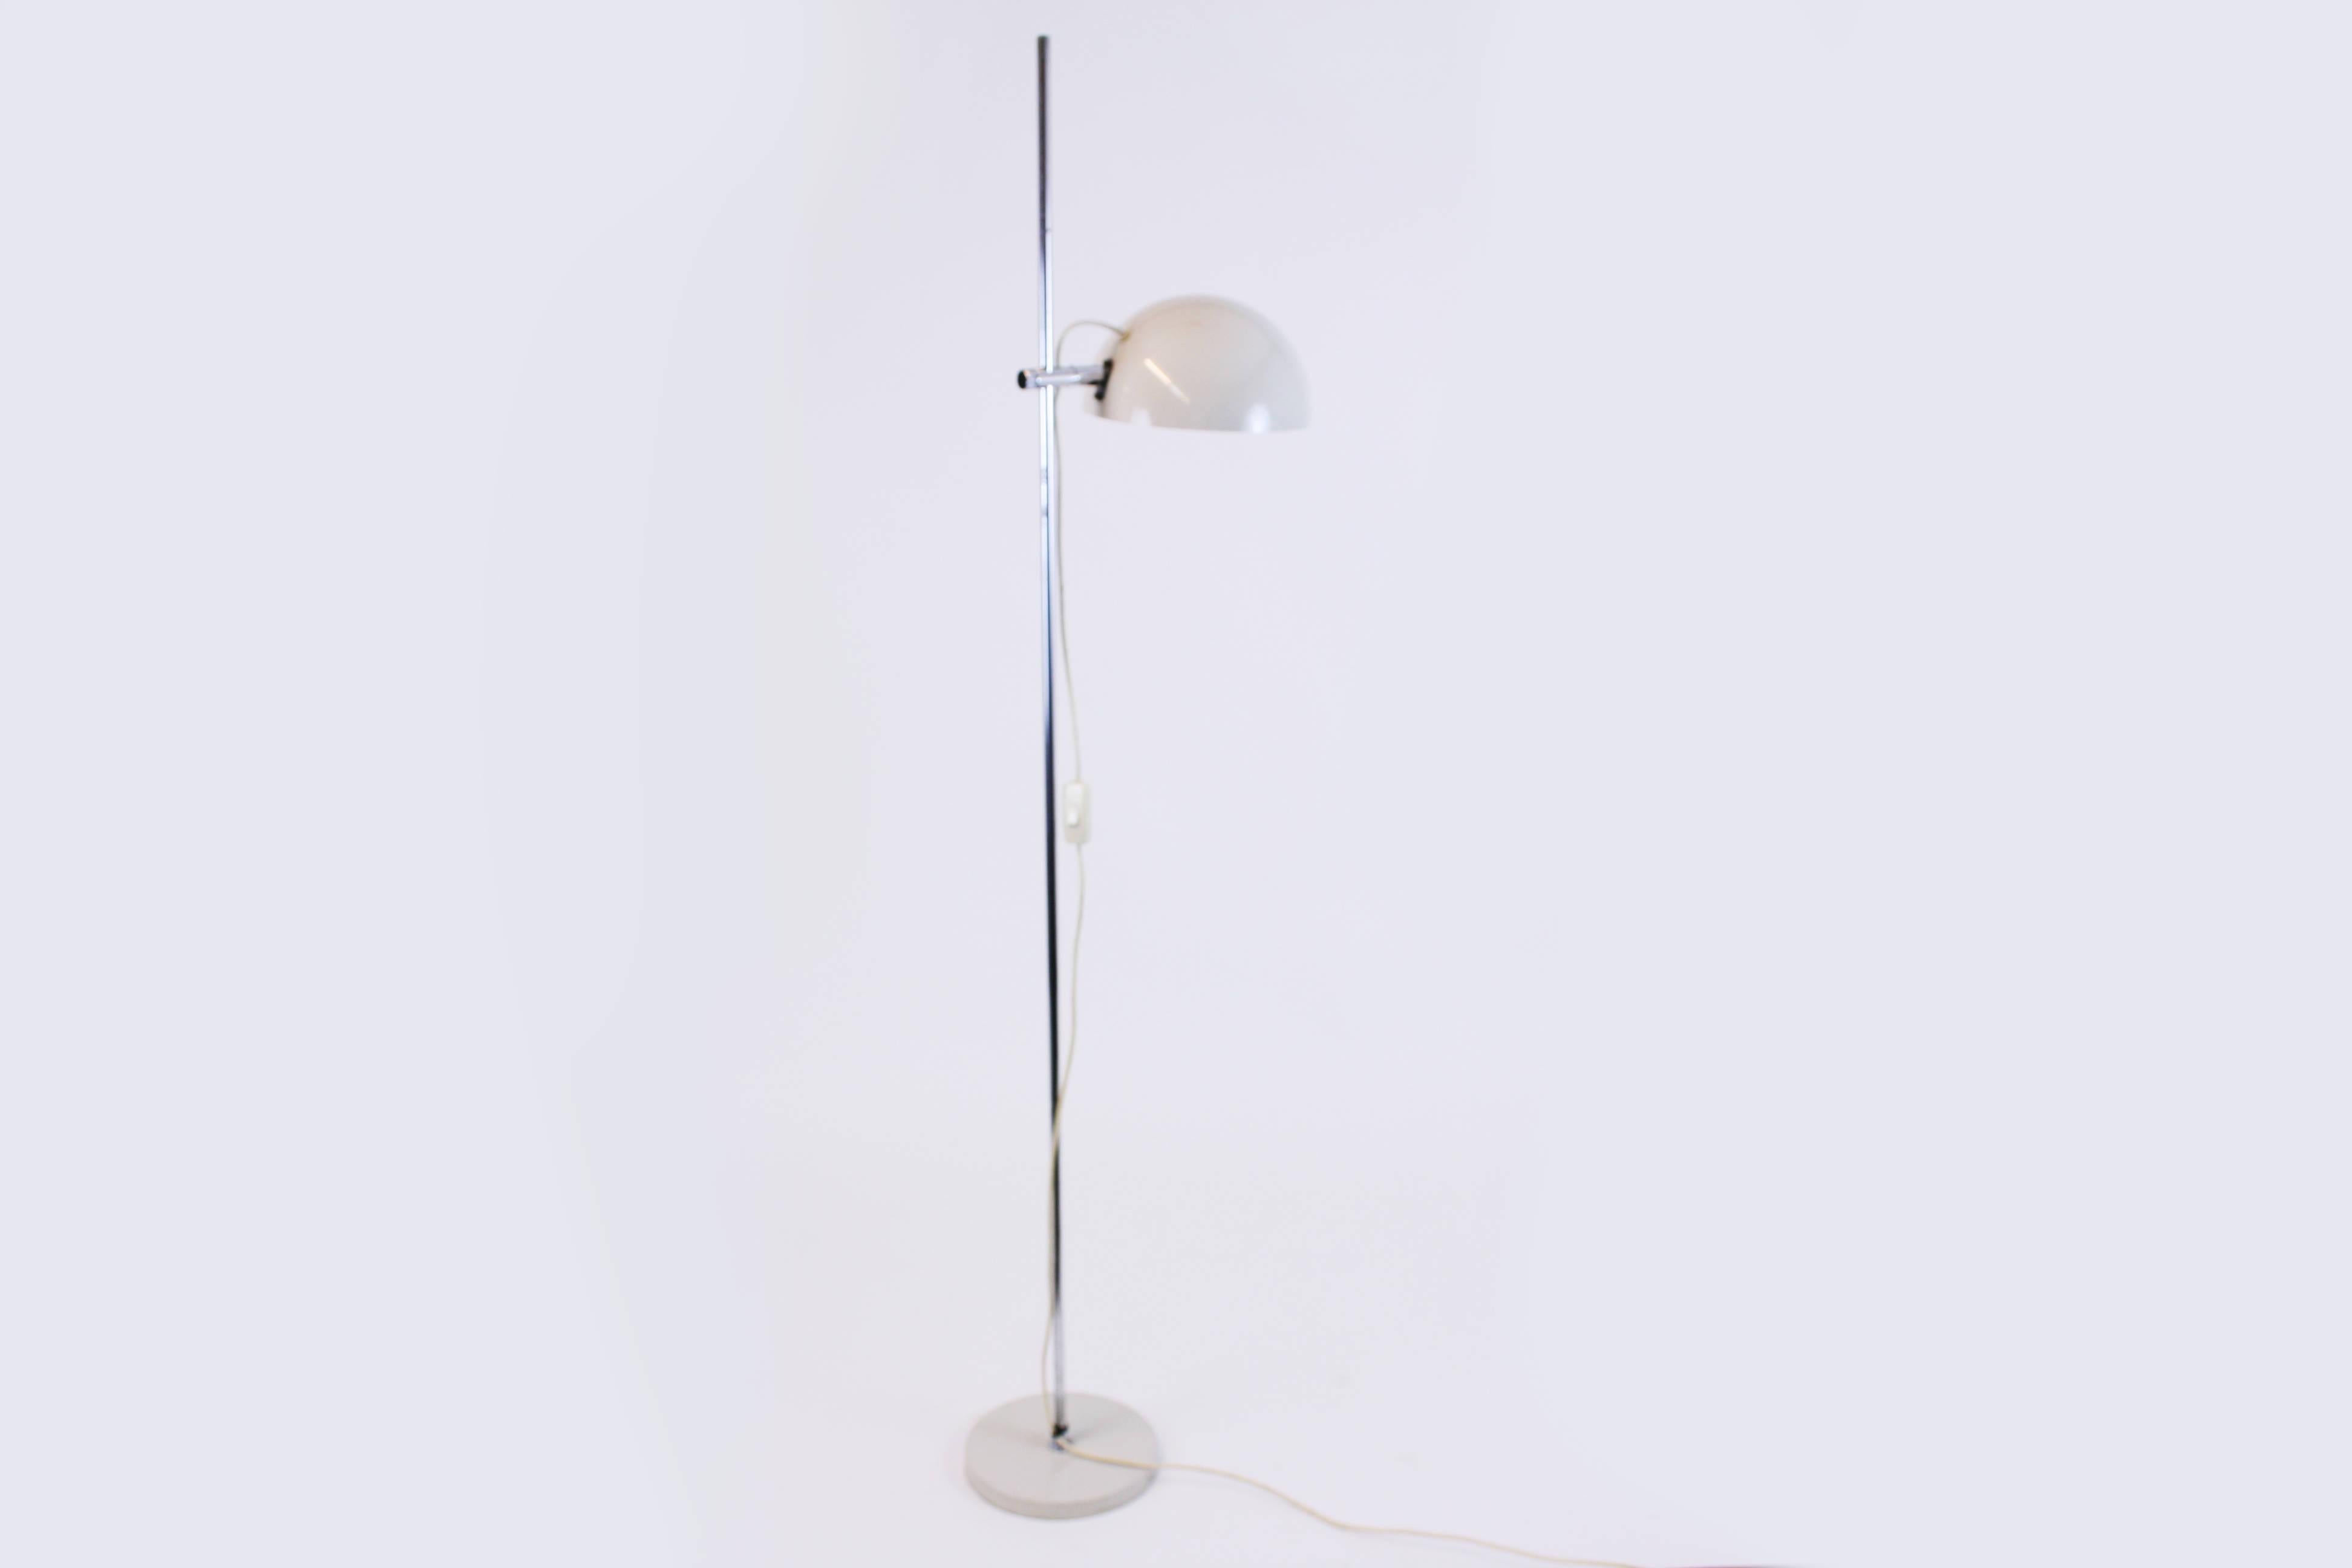 Le lampadaire Koch & Lowy pour Omi, fabriqué aux Etats-Unis, rappelle fortement le design Bauhaus en utilisant le cercle, le triangle ou le rectangle comme éléments de base. L'objet est entièrement constitué de métal. Son design strictement réduit